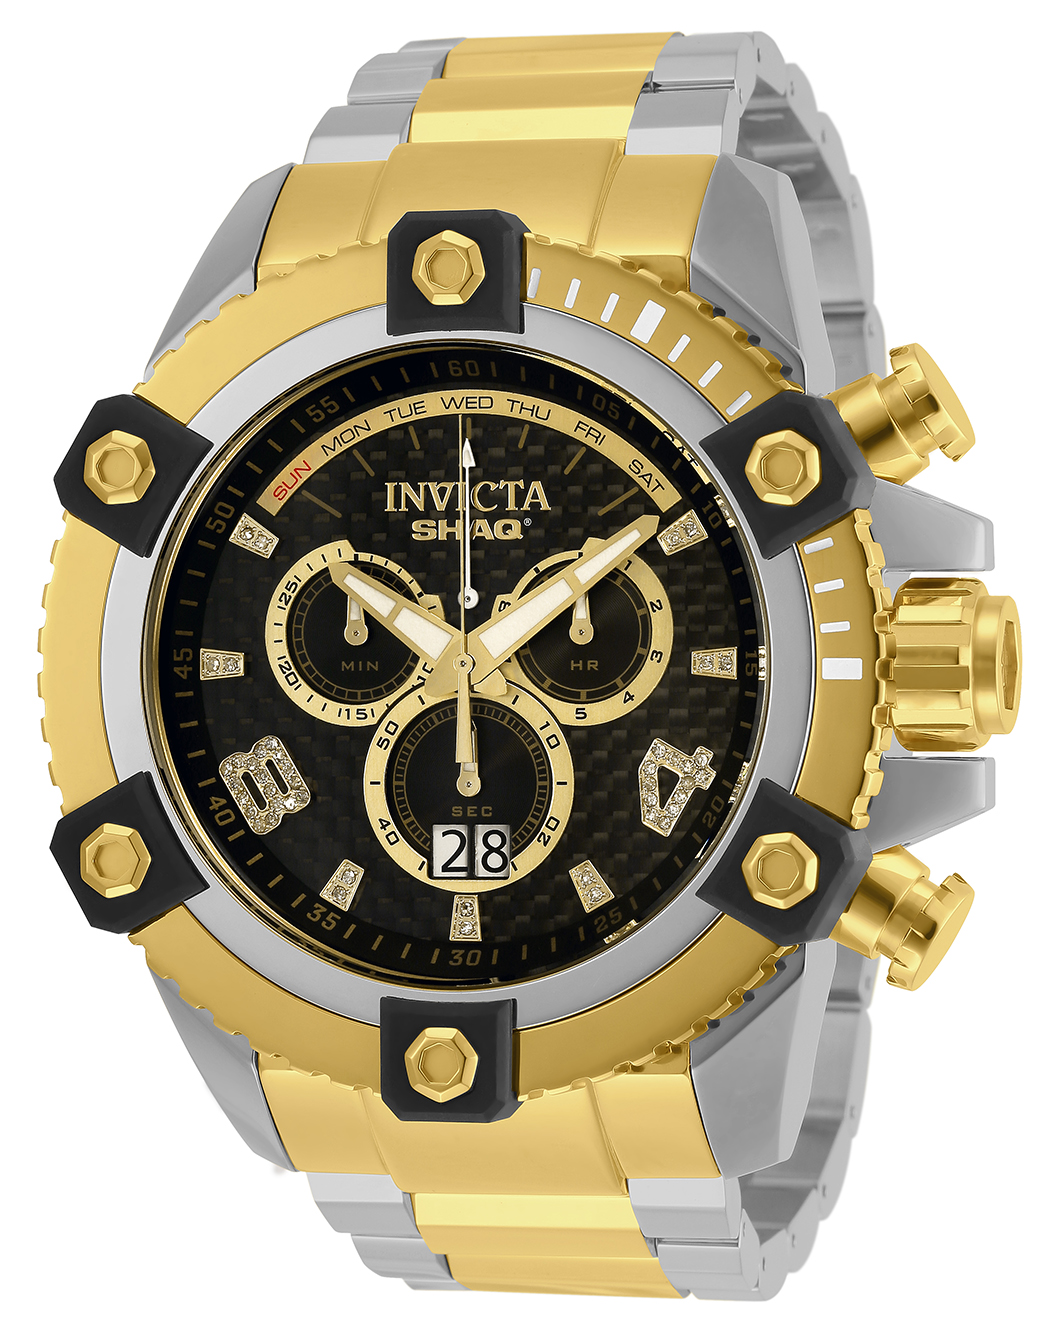 Invicta SHAQ 0.19 Carat Diamond Men's Watch - 60mm, Steel, Gold (33727)